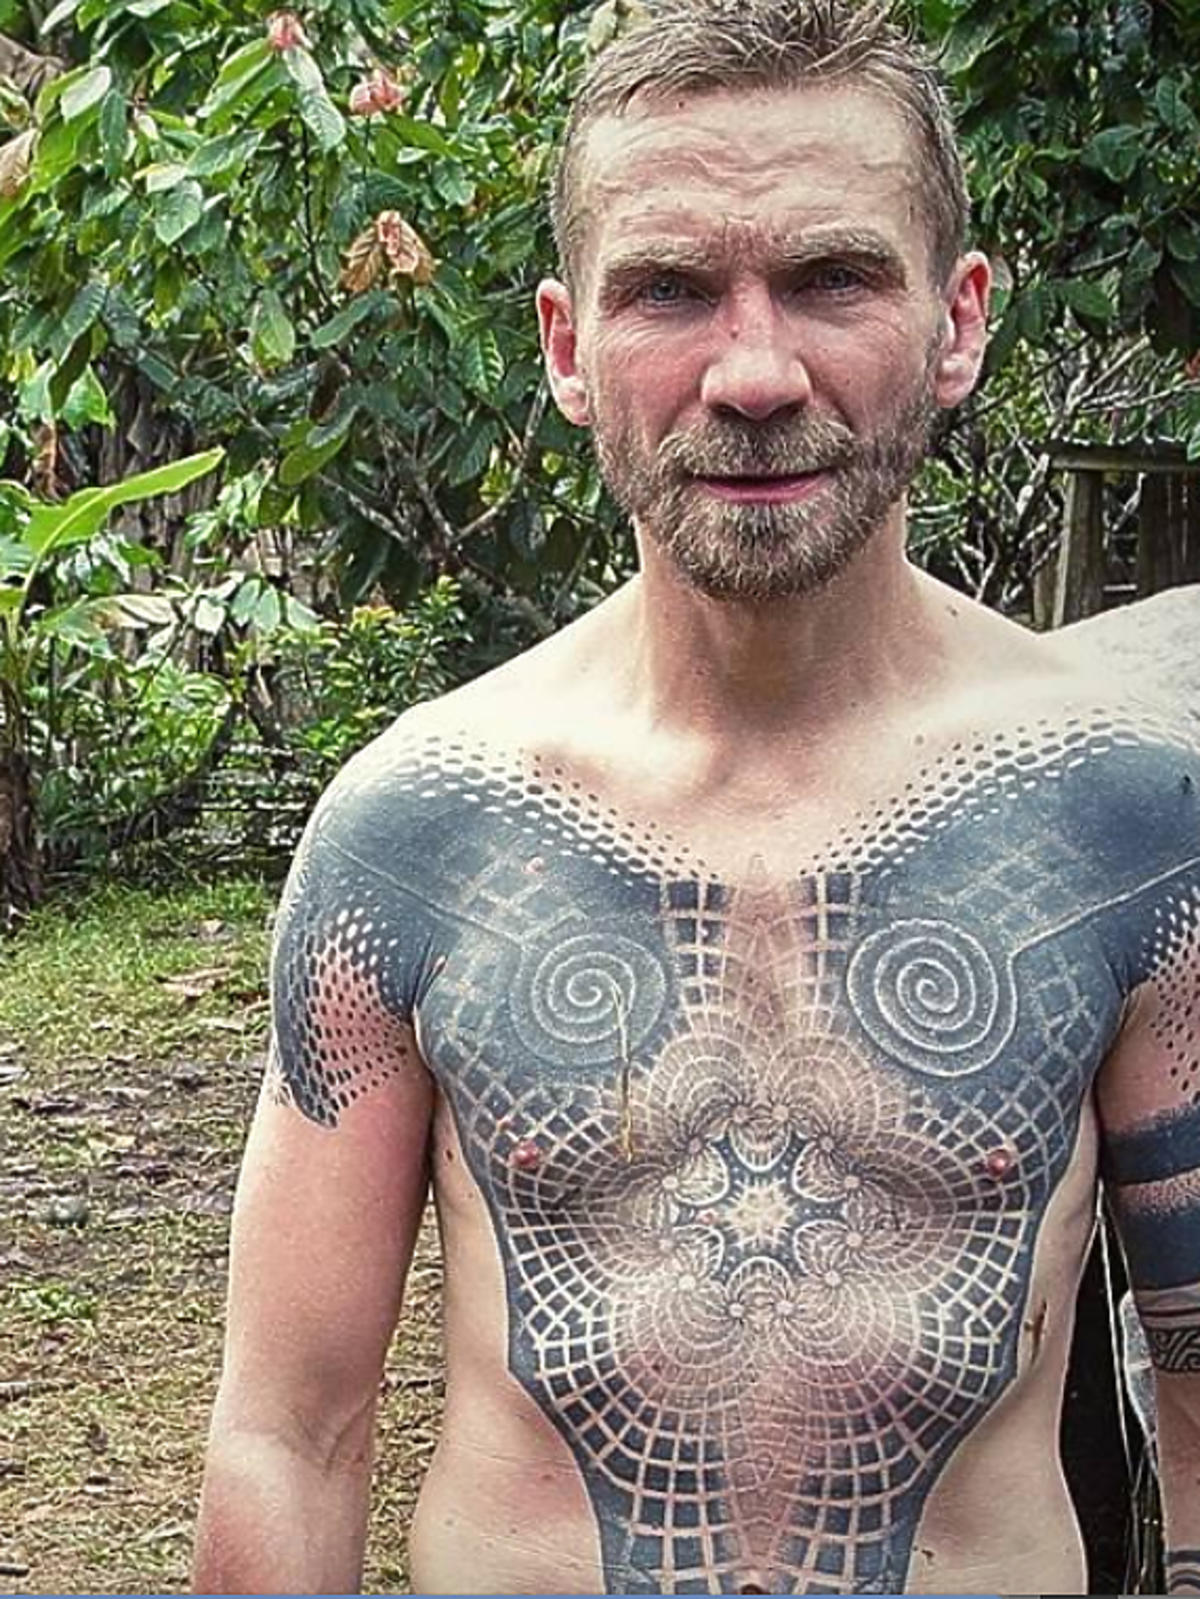 Przemysław Kossakowski, jakie ma tatuaże?